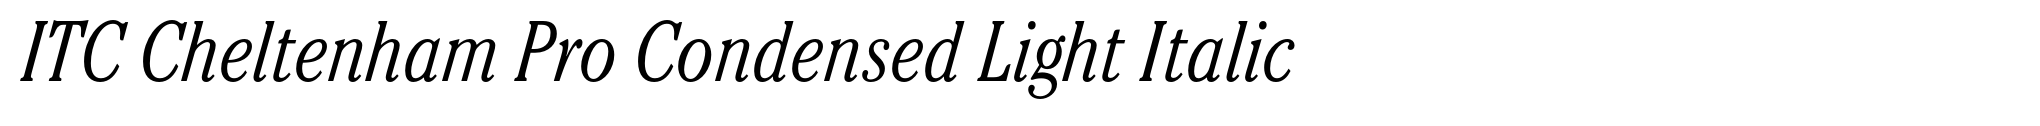 ITC Cheltenham Pro Condensed Light Italic image